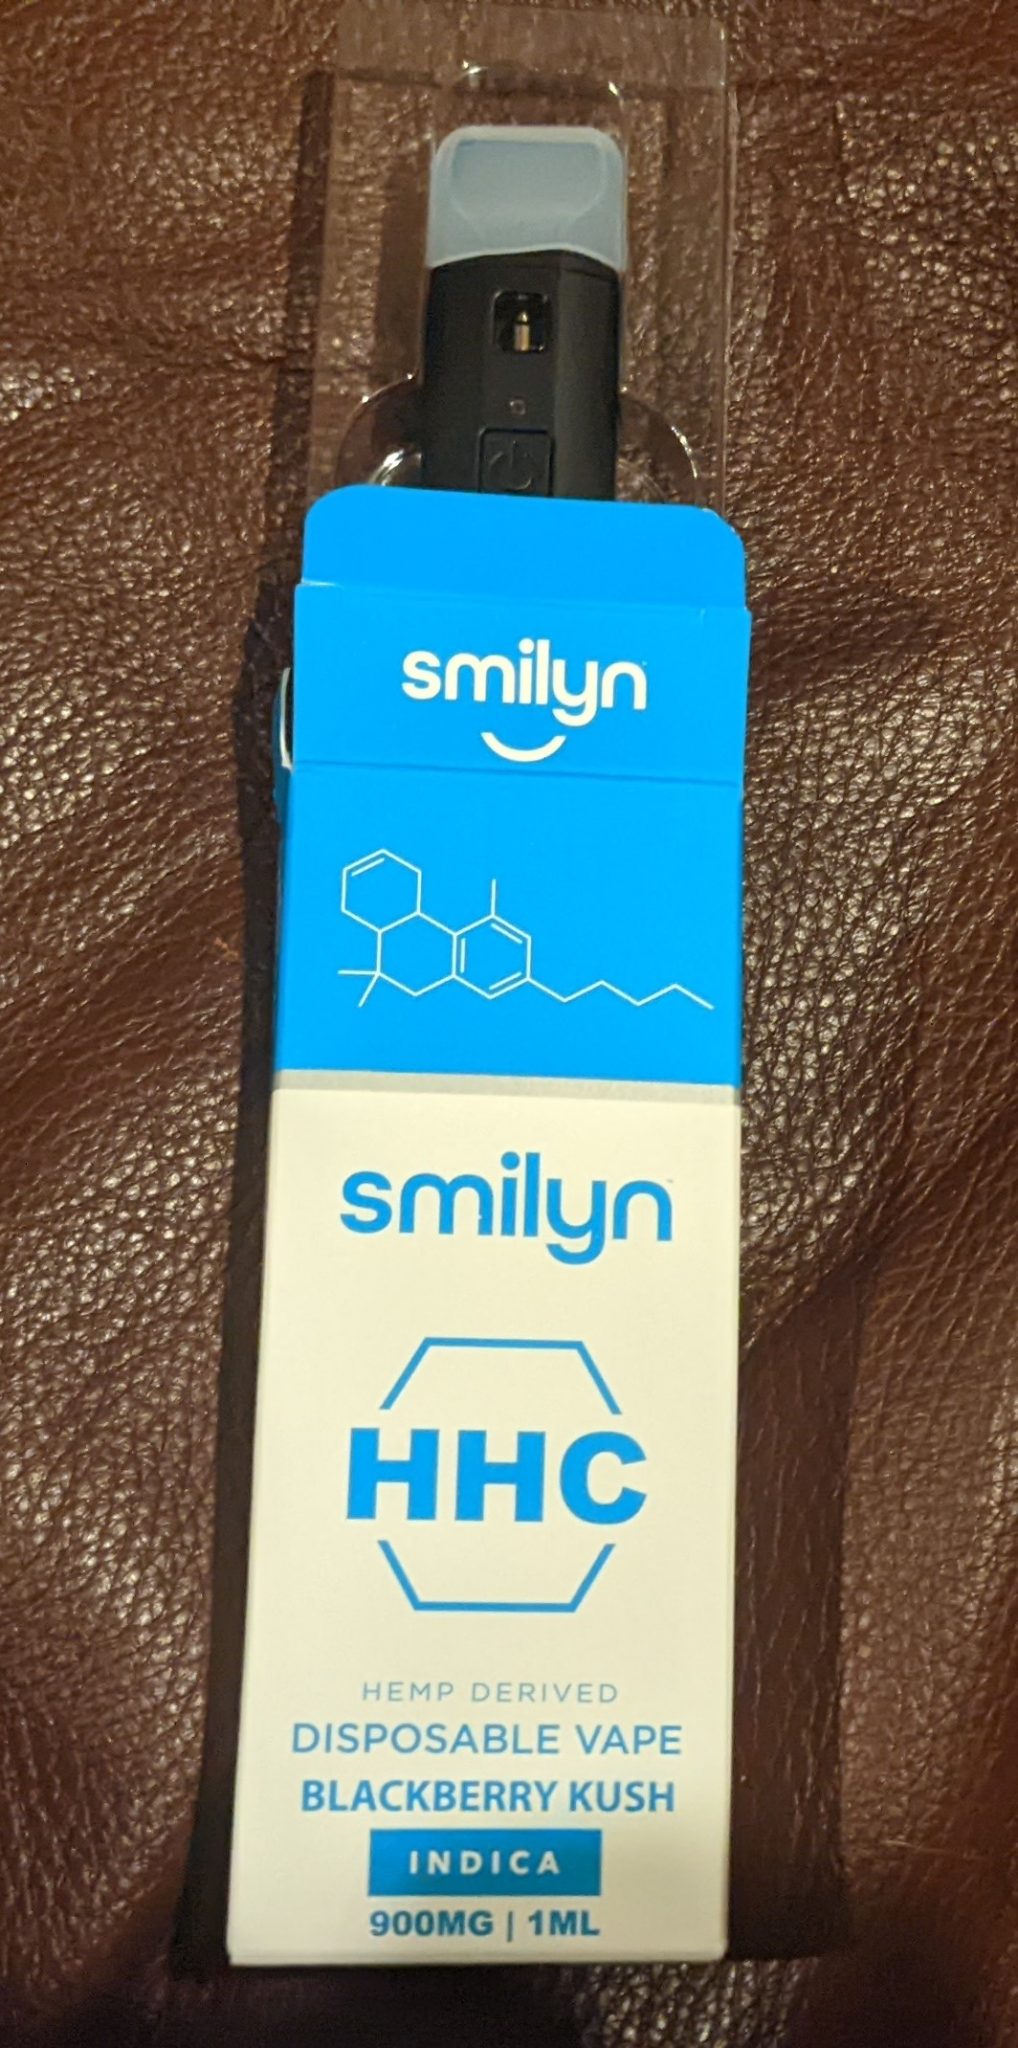 smilyn hhc vape box